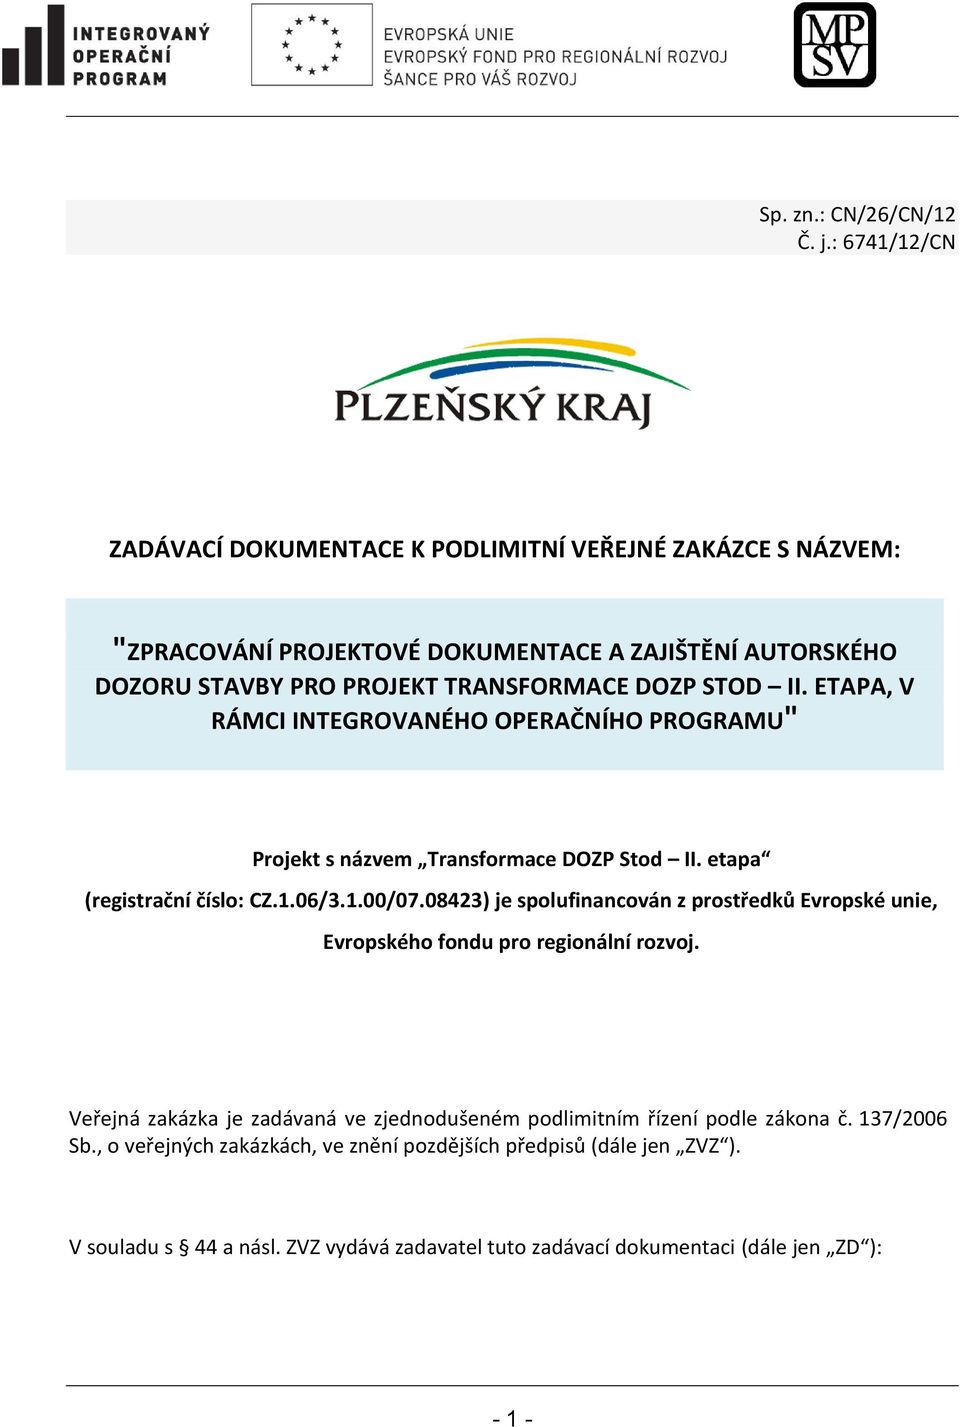 DOZP STOD II. ETAPA, V RÁMCI INTEGROVANÉHO OPERAČNÍHO PROGRAMU" Projekt s názvem Transformace DOZP Stod II. etapa (registrační číslo: CZ.1.06/3.1.00/07.